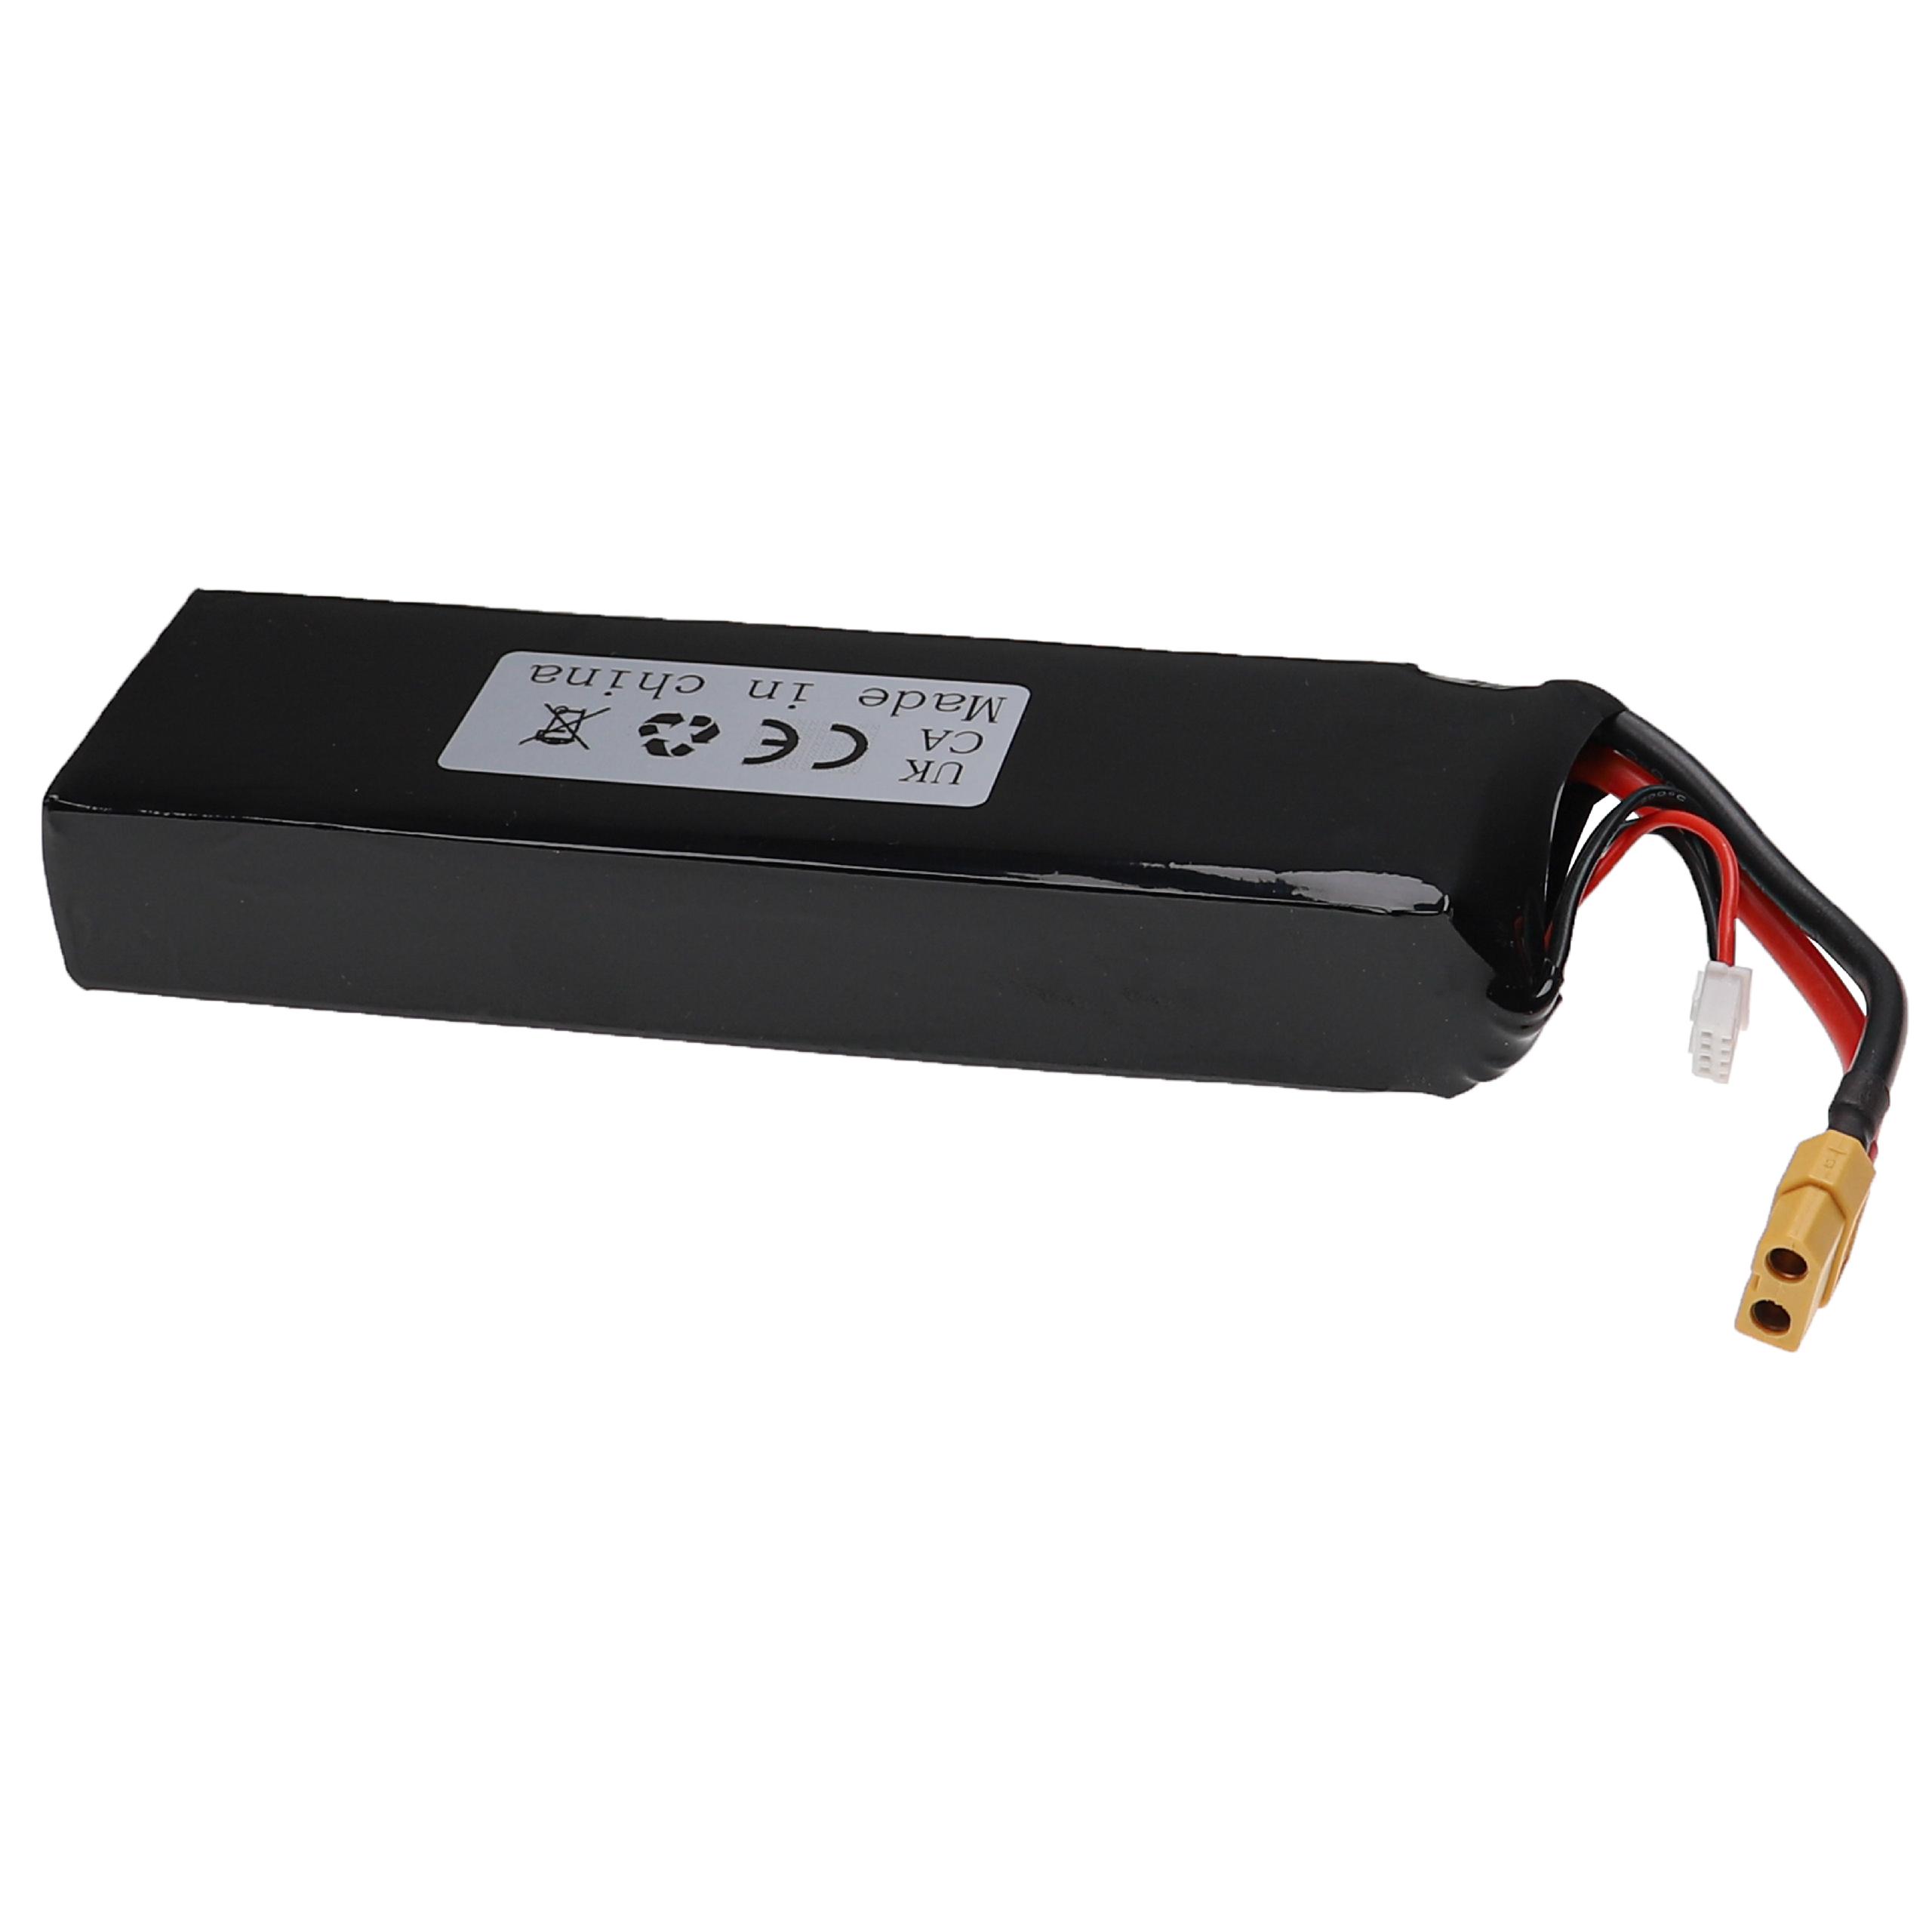 Batería para dispositivos modelismo - 6200 mAh 11,1 V Li-poli, XT60